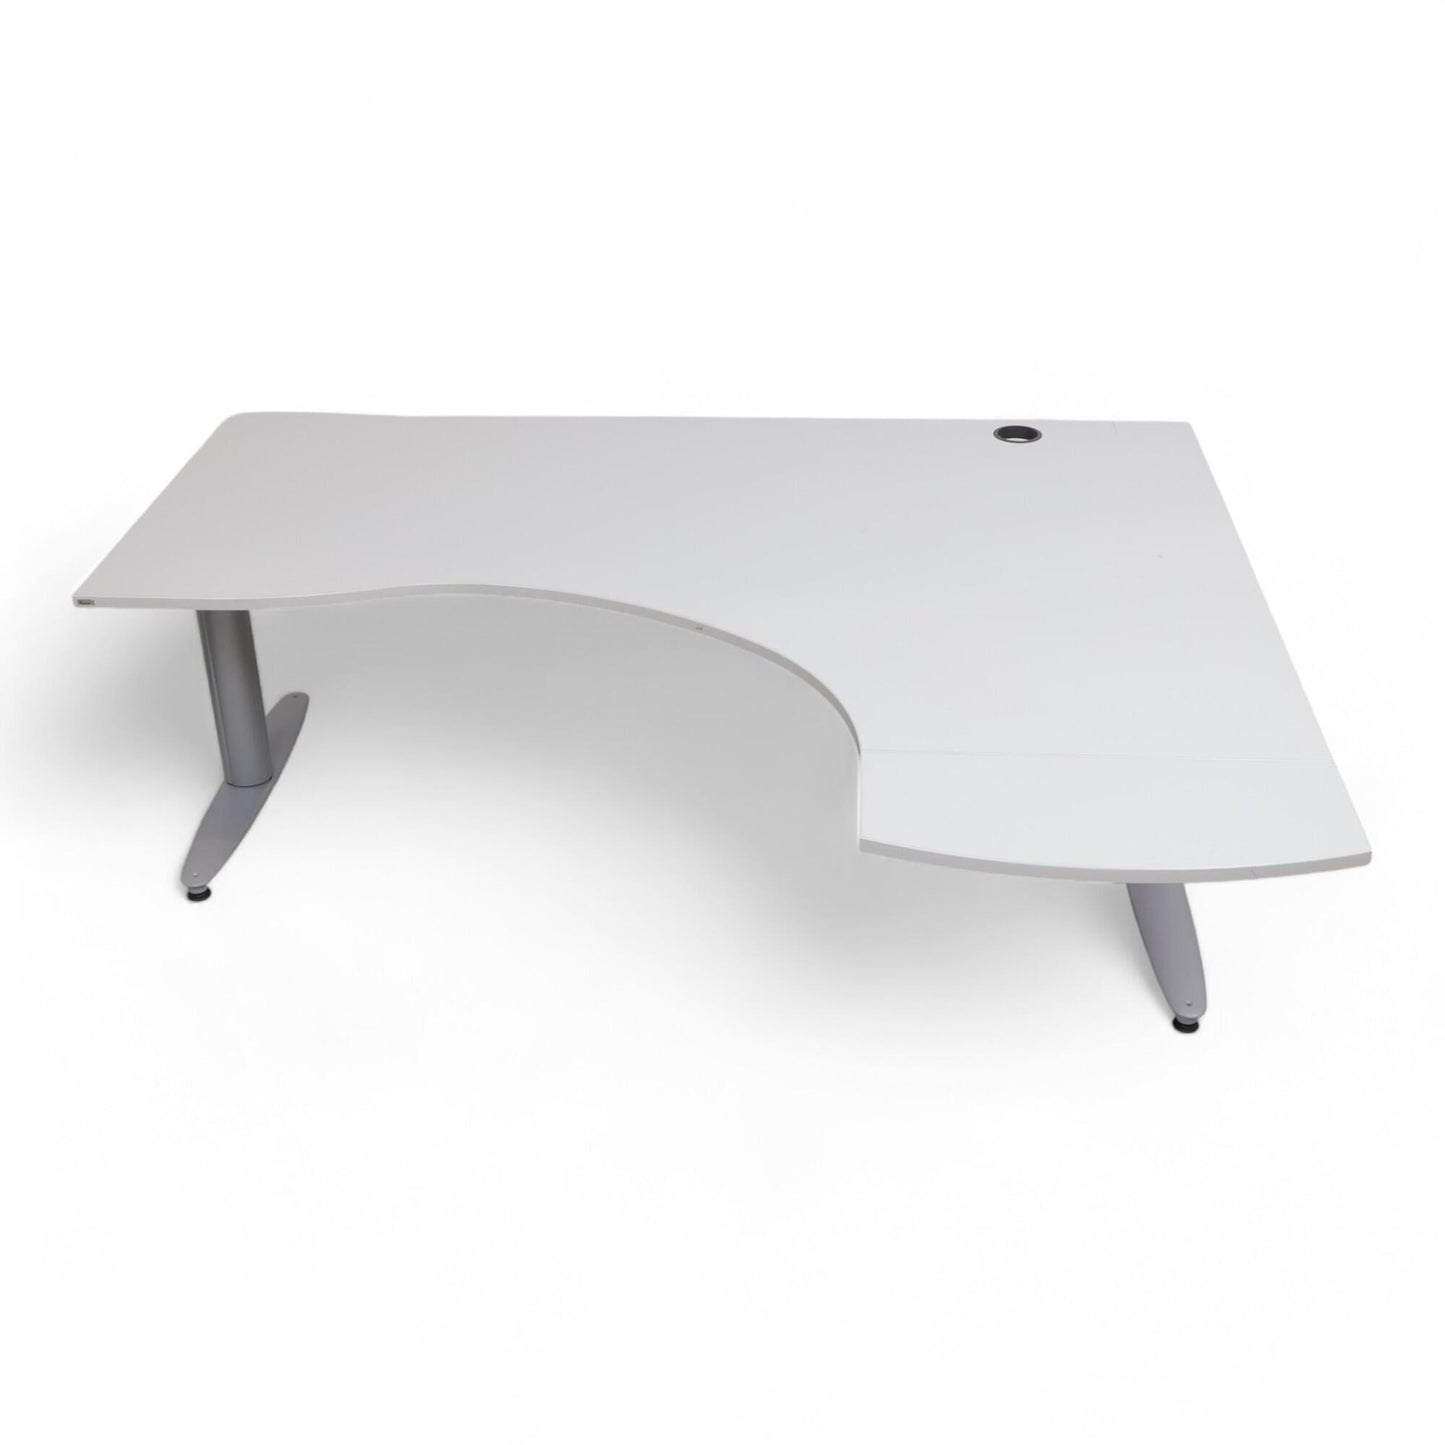 Kvalitetsikret | 200×145, Kinnarps elektrisk hev/senk skrivebord med sving i lys grå